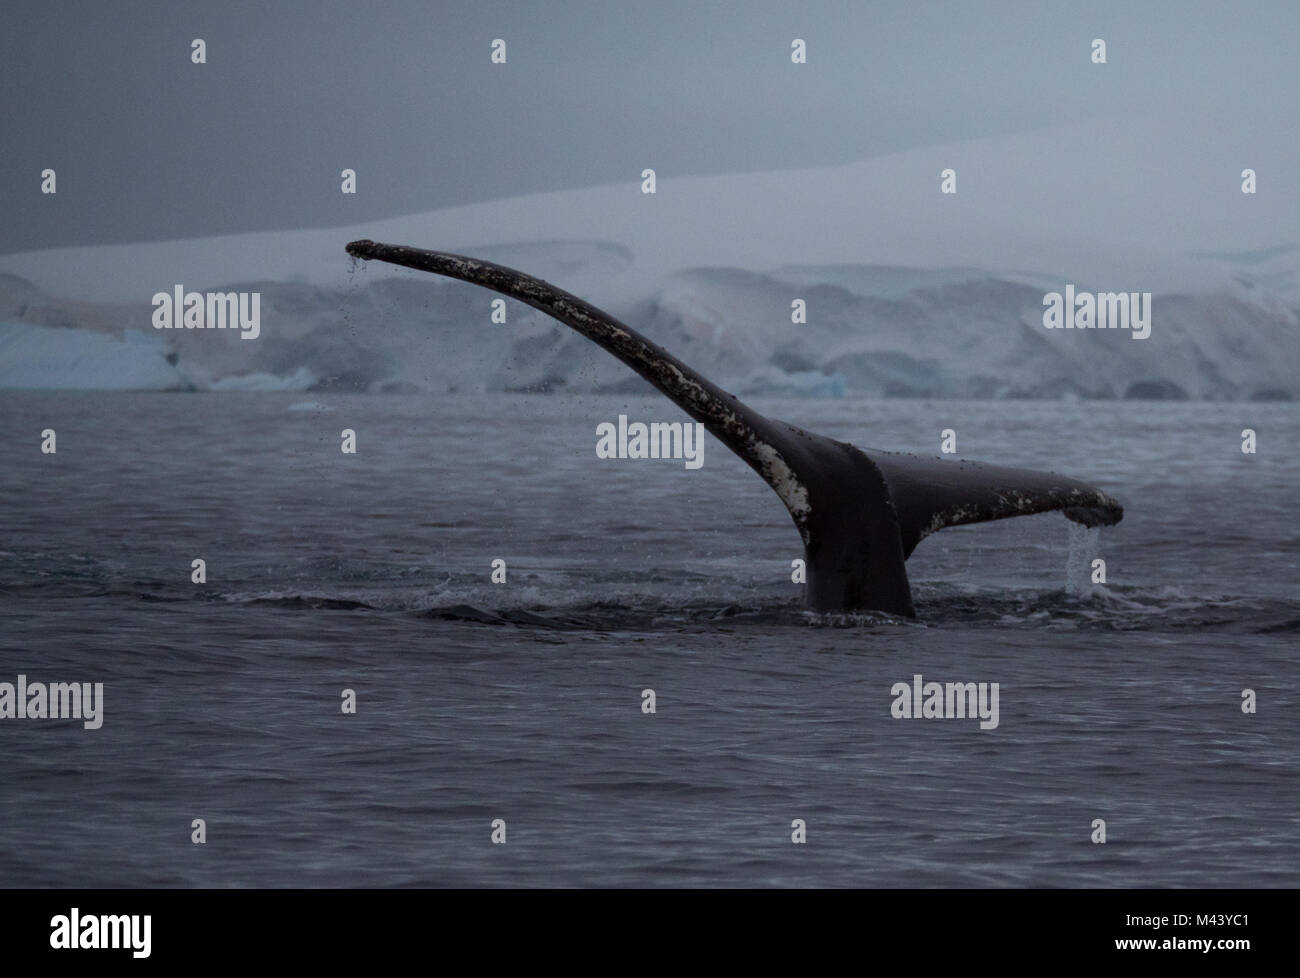 Une queue de baleine à bosse unique avec des marques, des éraflures et les balanes. La baleine est dans l'Antarctique. Banque D'Images